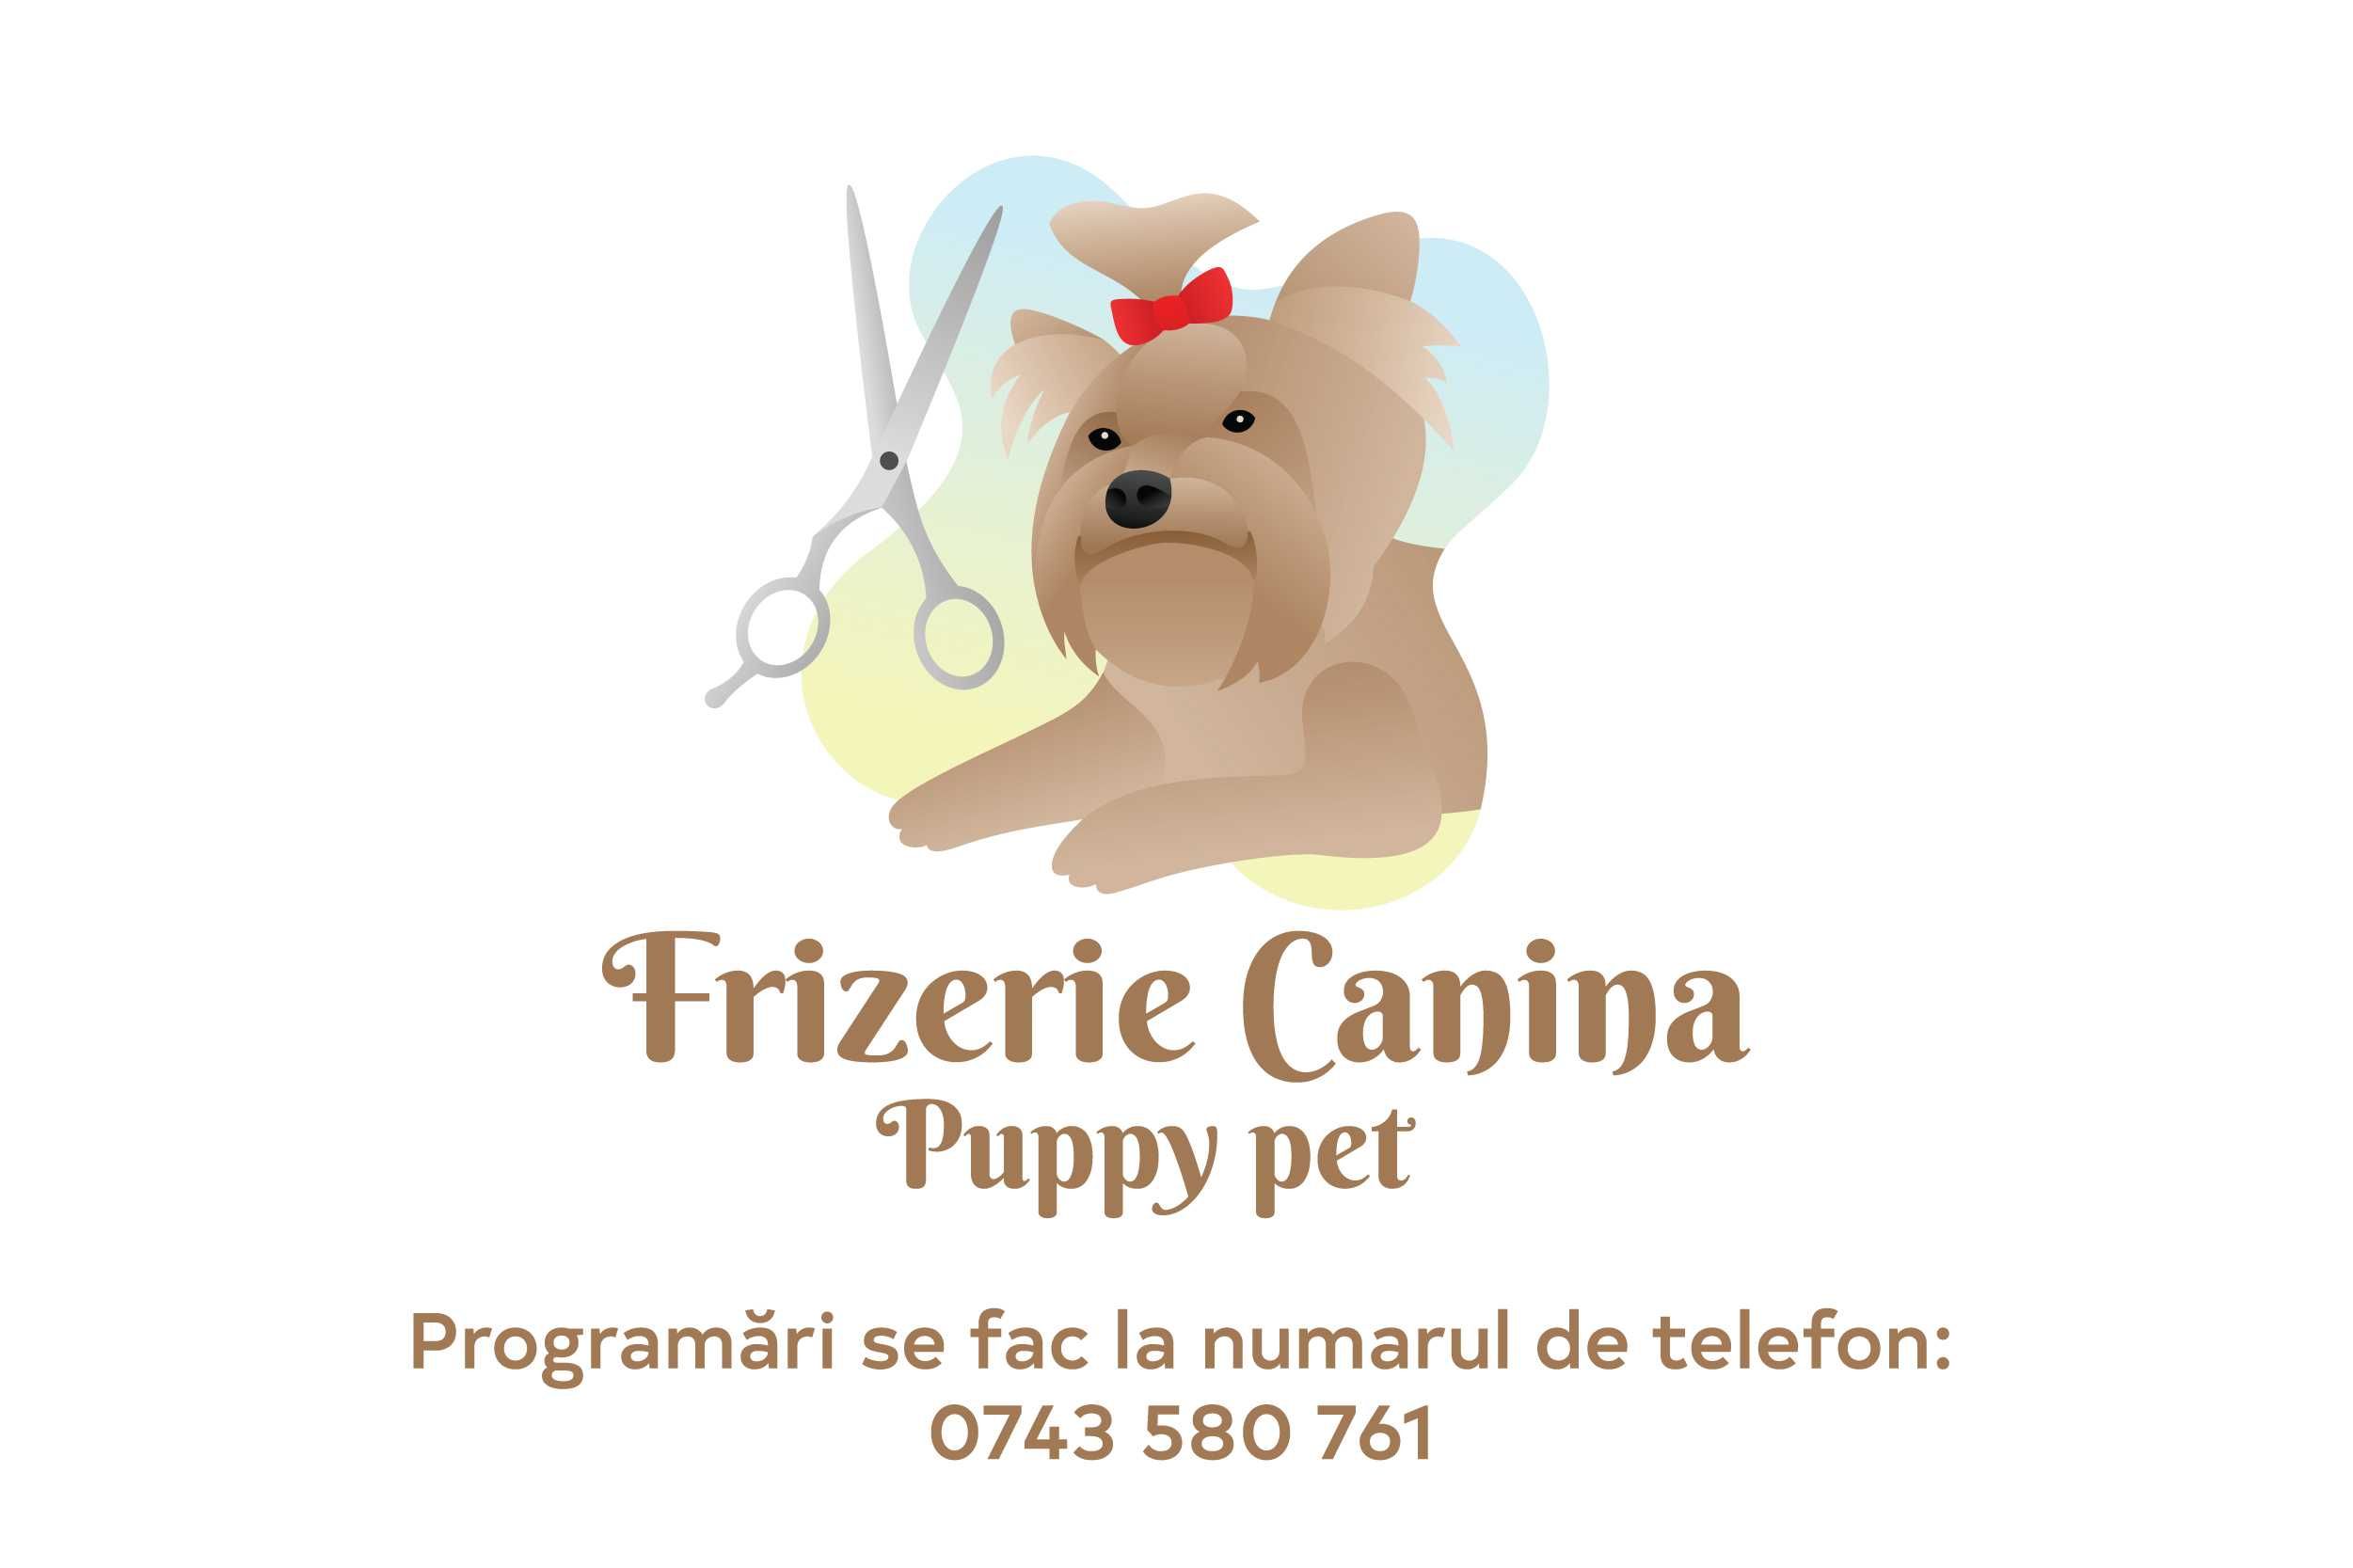 frizerie canina #puppypetiasi